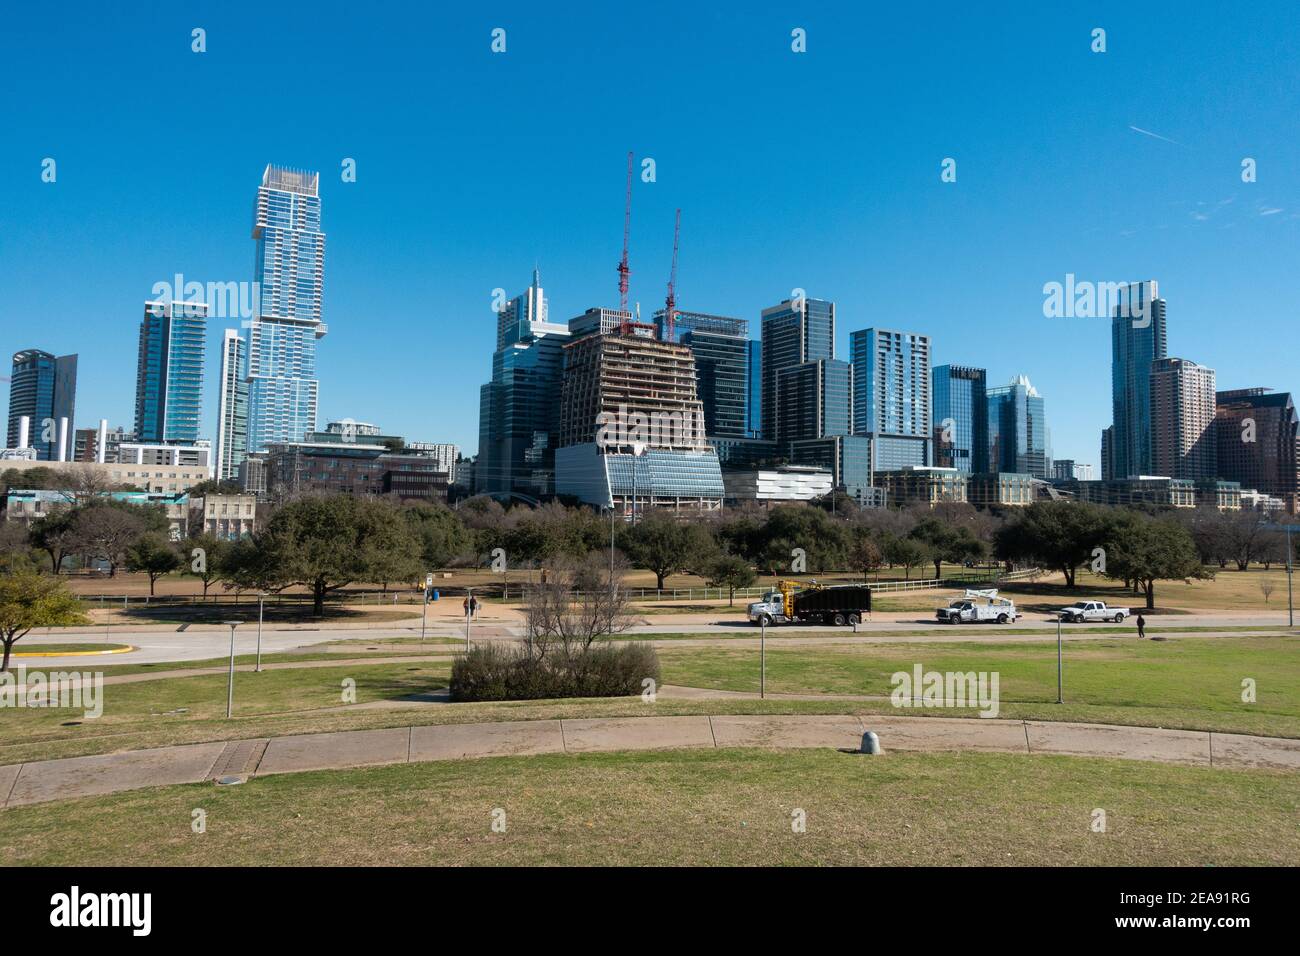 El horizonte del centro de Austin, Texas, con el parque en primer plano Foto de stock